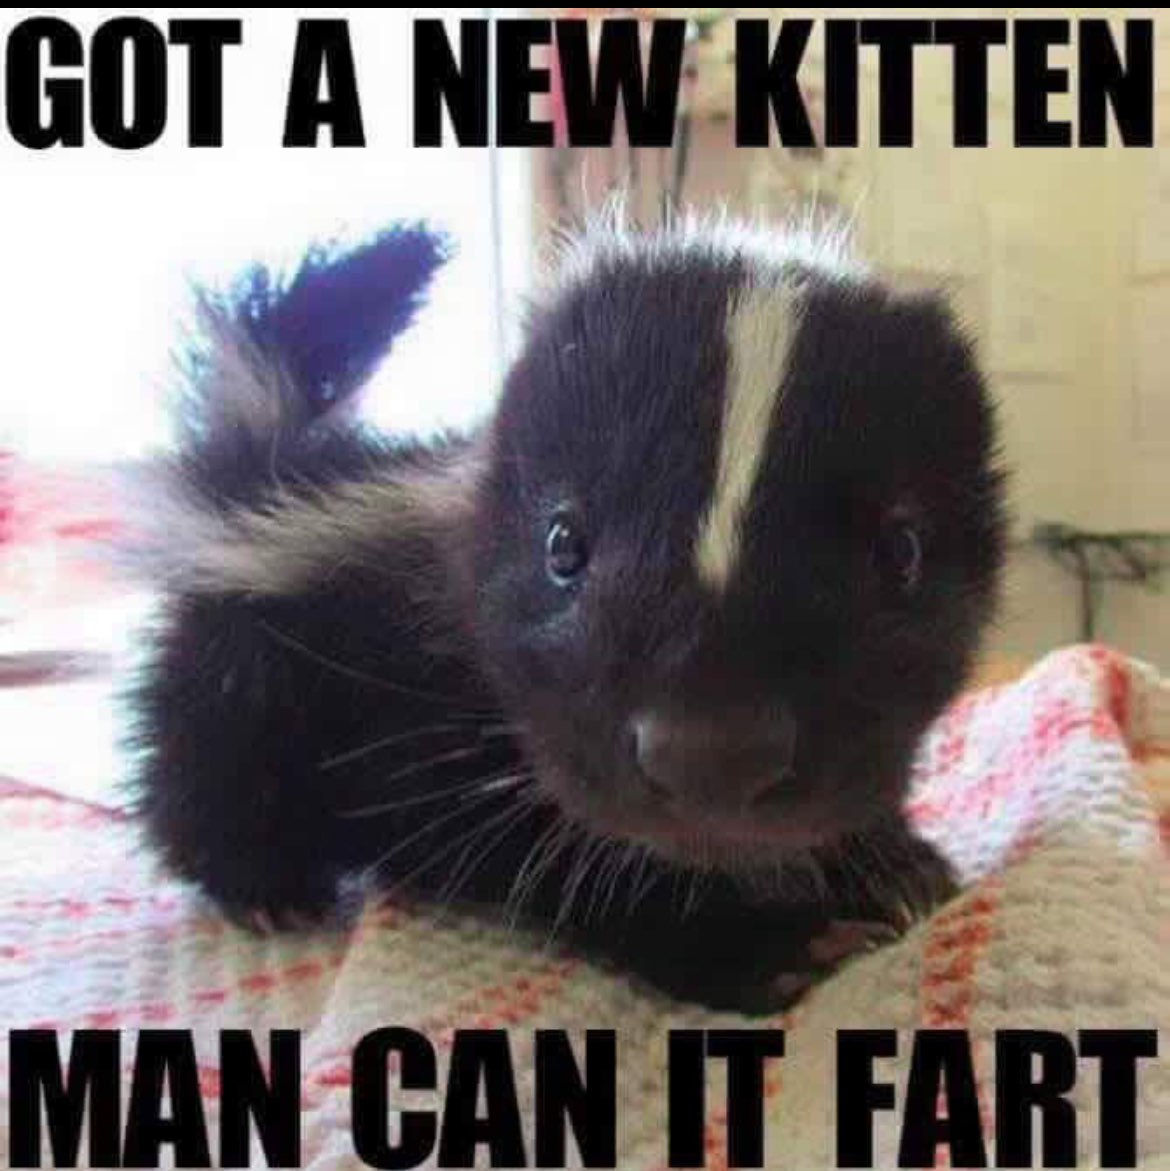 Just Got a new kitten, boy can it fart